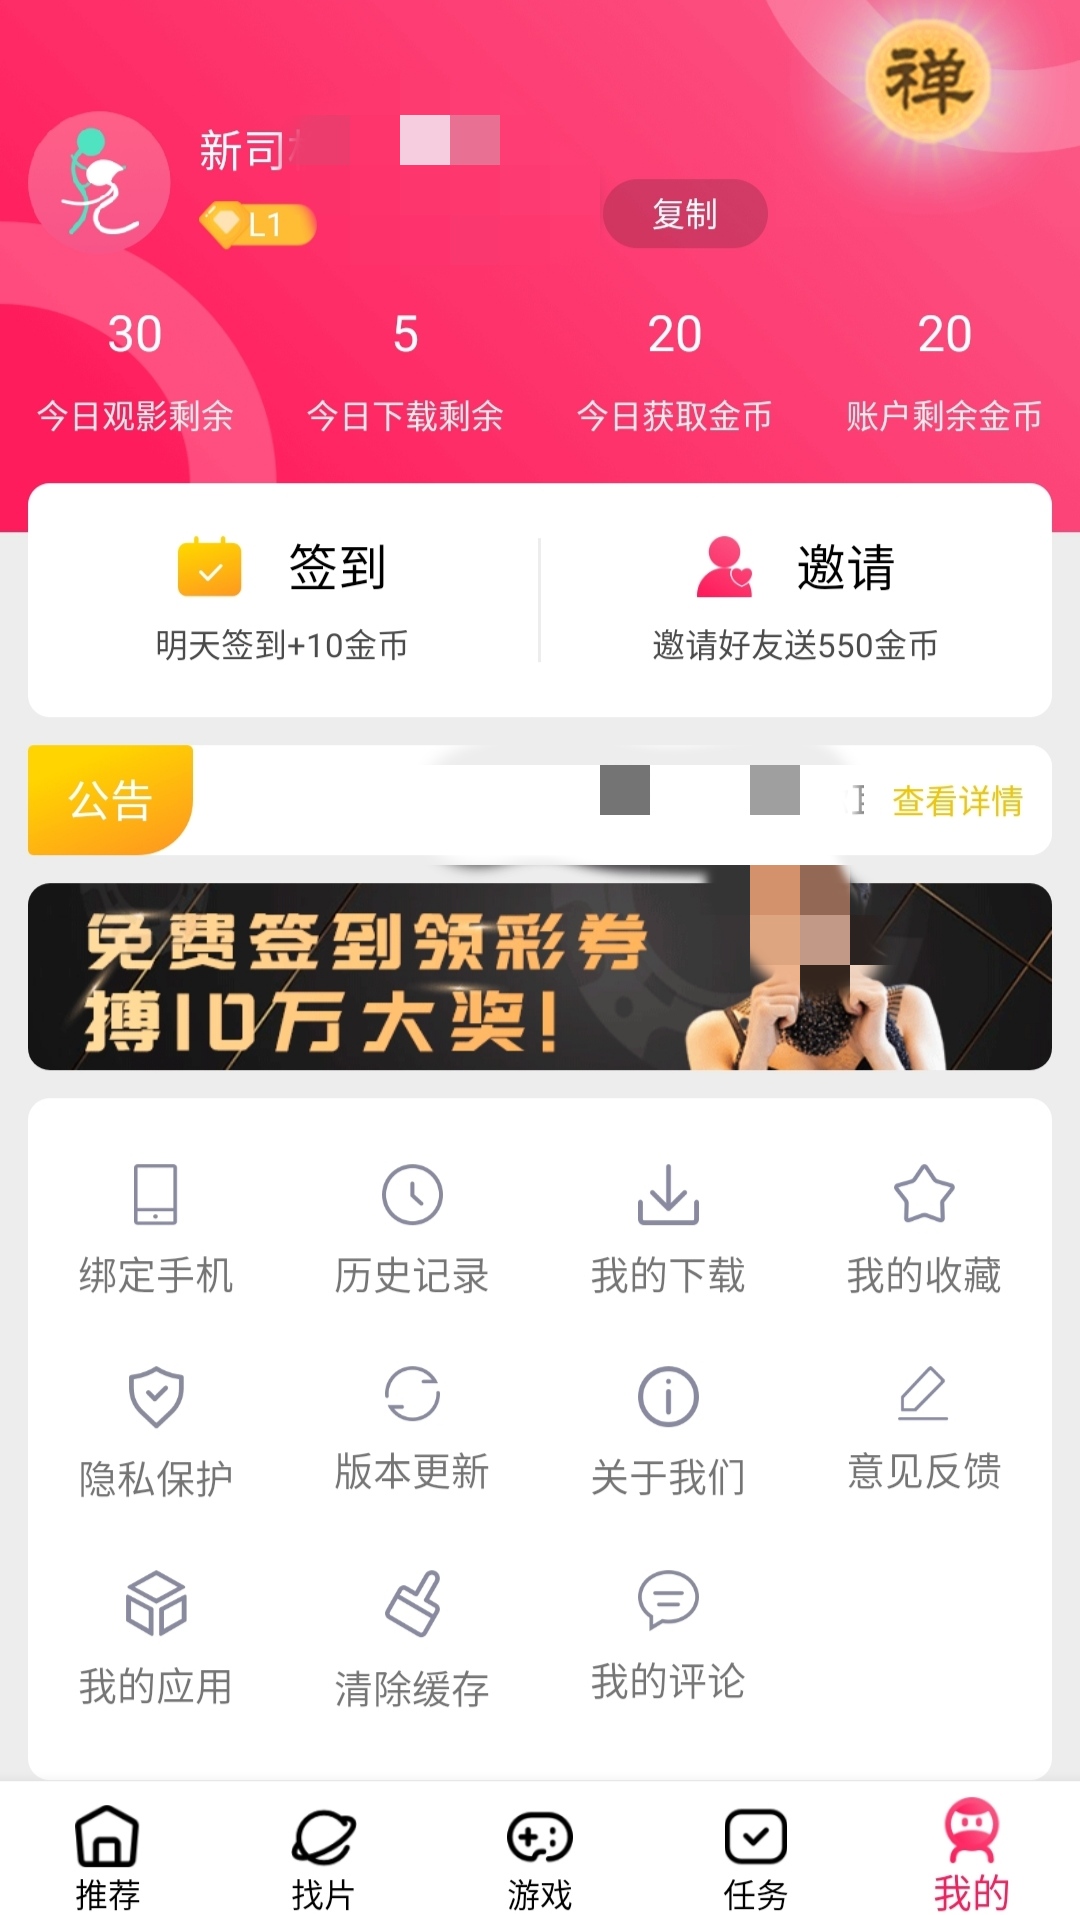 刘卫东未解长安困局 官网为色情网站引流 | 中车网